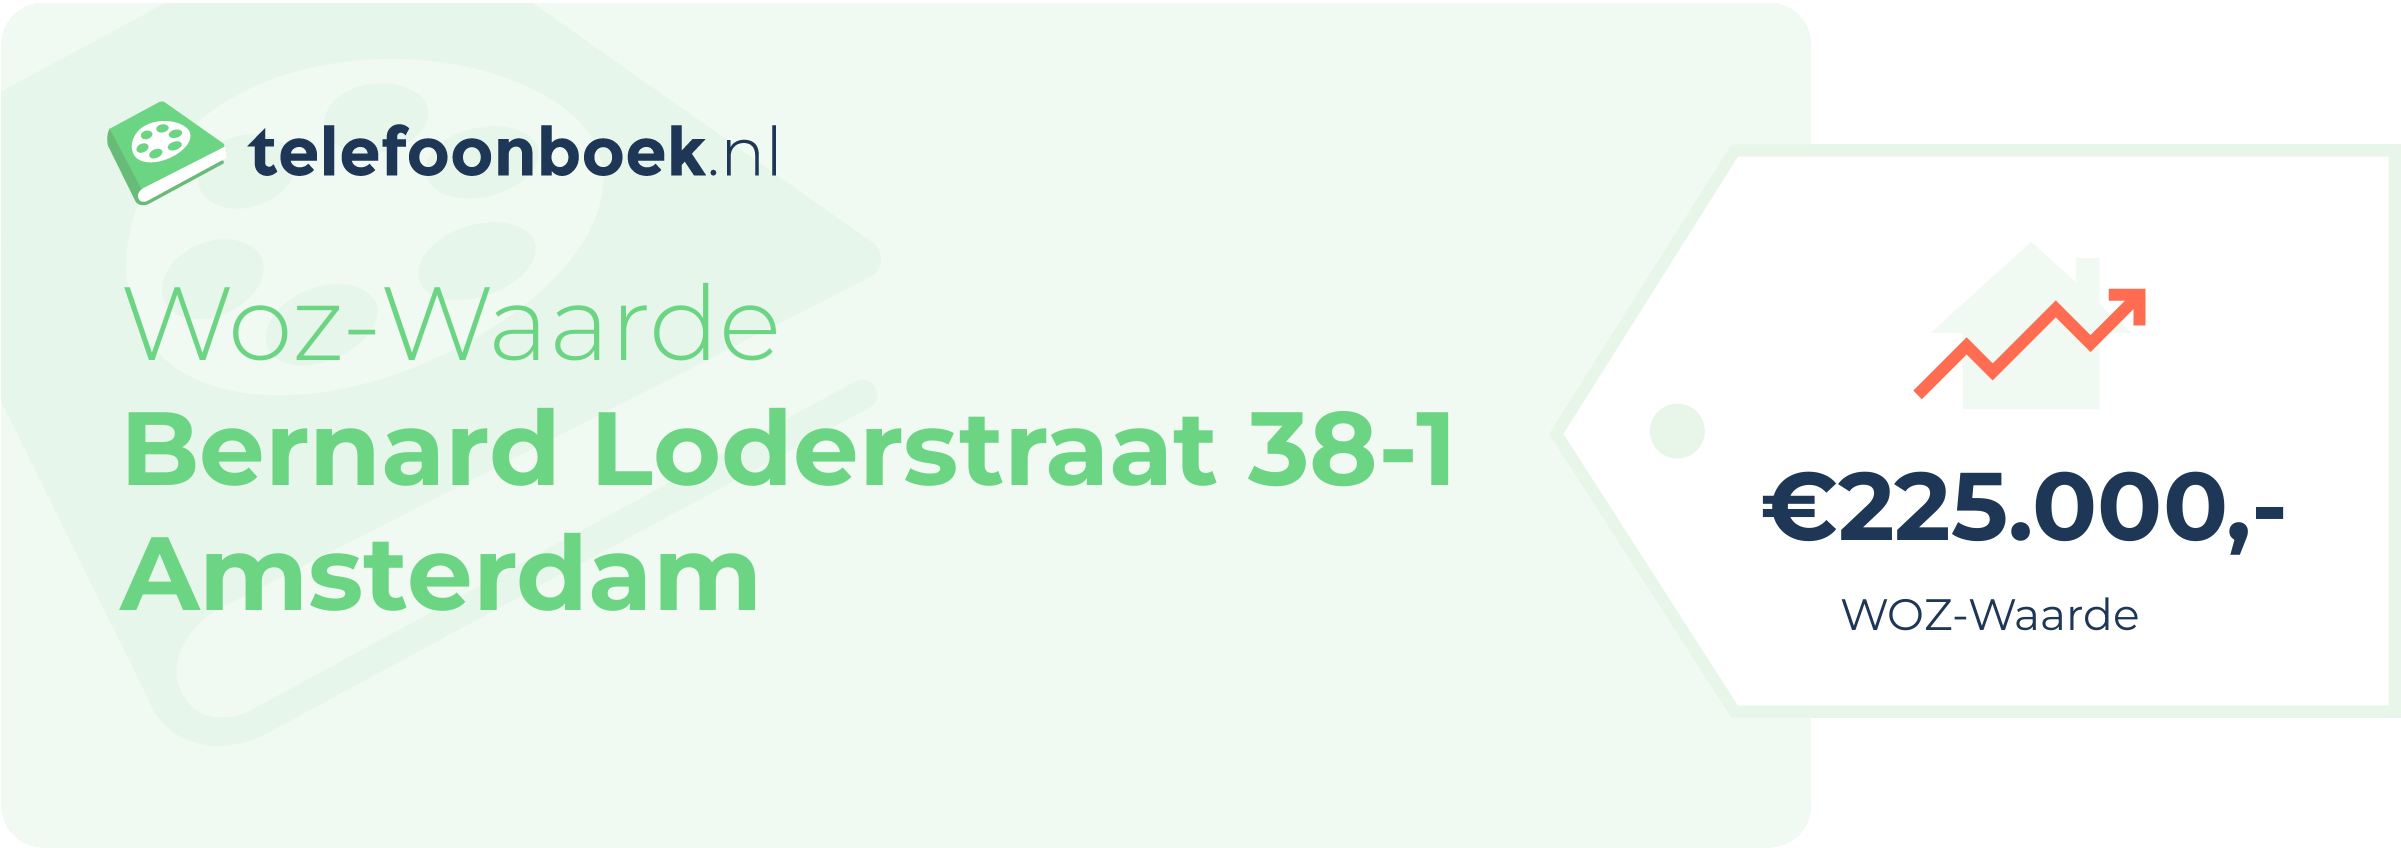 WOZ-waarde Bernard Loderstraat 38-1 Amsterdam